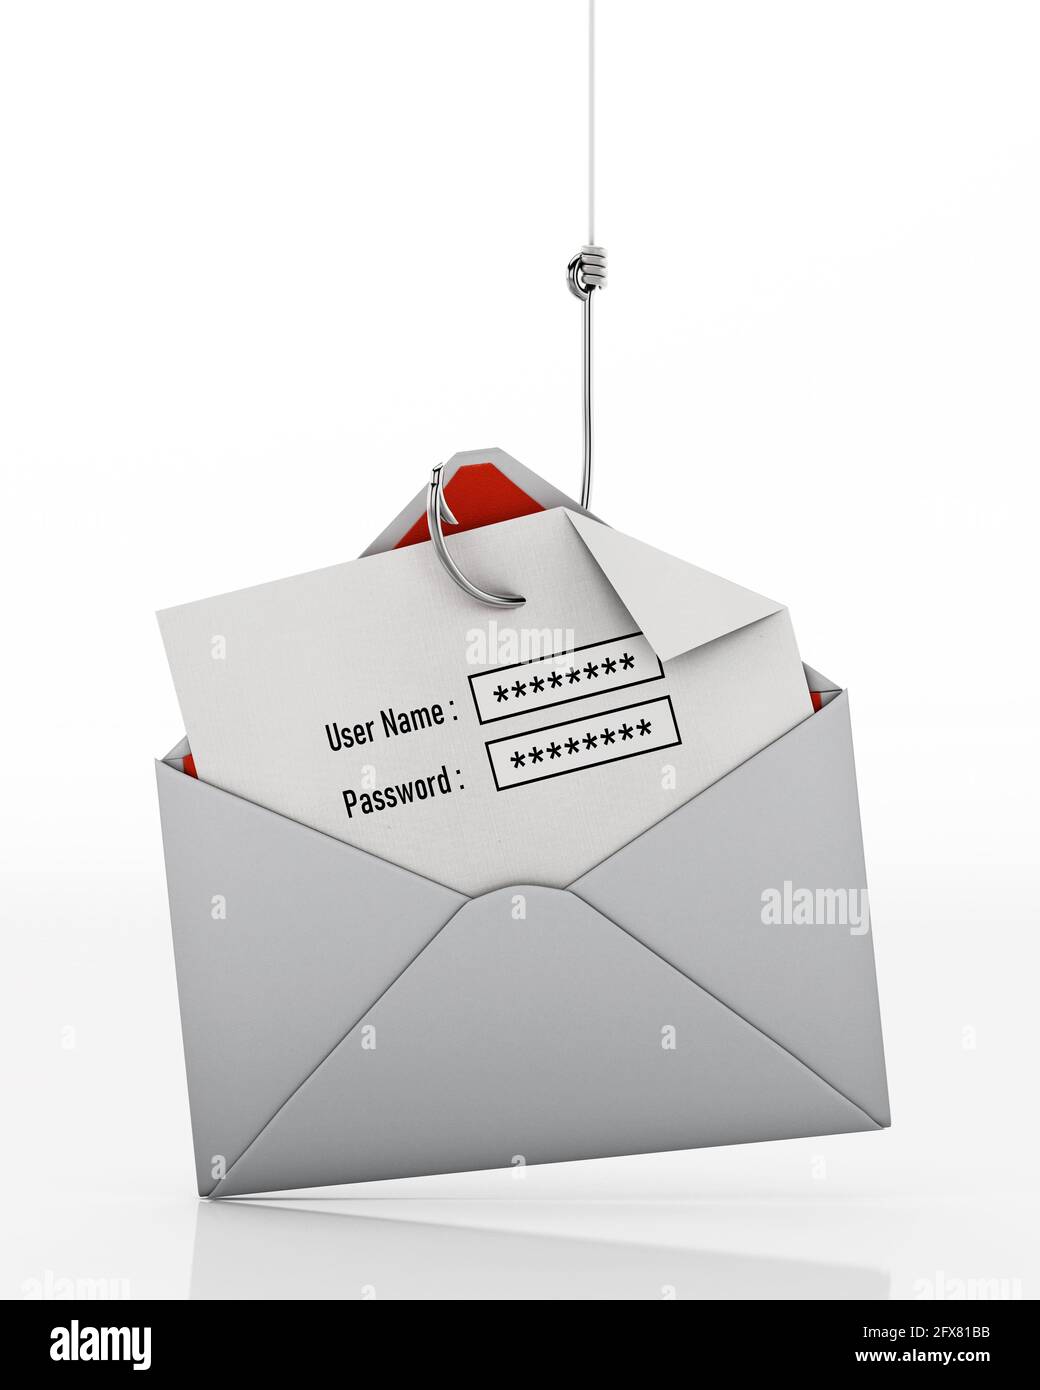 Crochet de poisson volant les zones de texte de nom d'utilisateur et de mot de passe sur le papier à l'intérieur d'une enveloppe. Illustration 3D. Banque D'Images